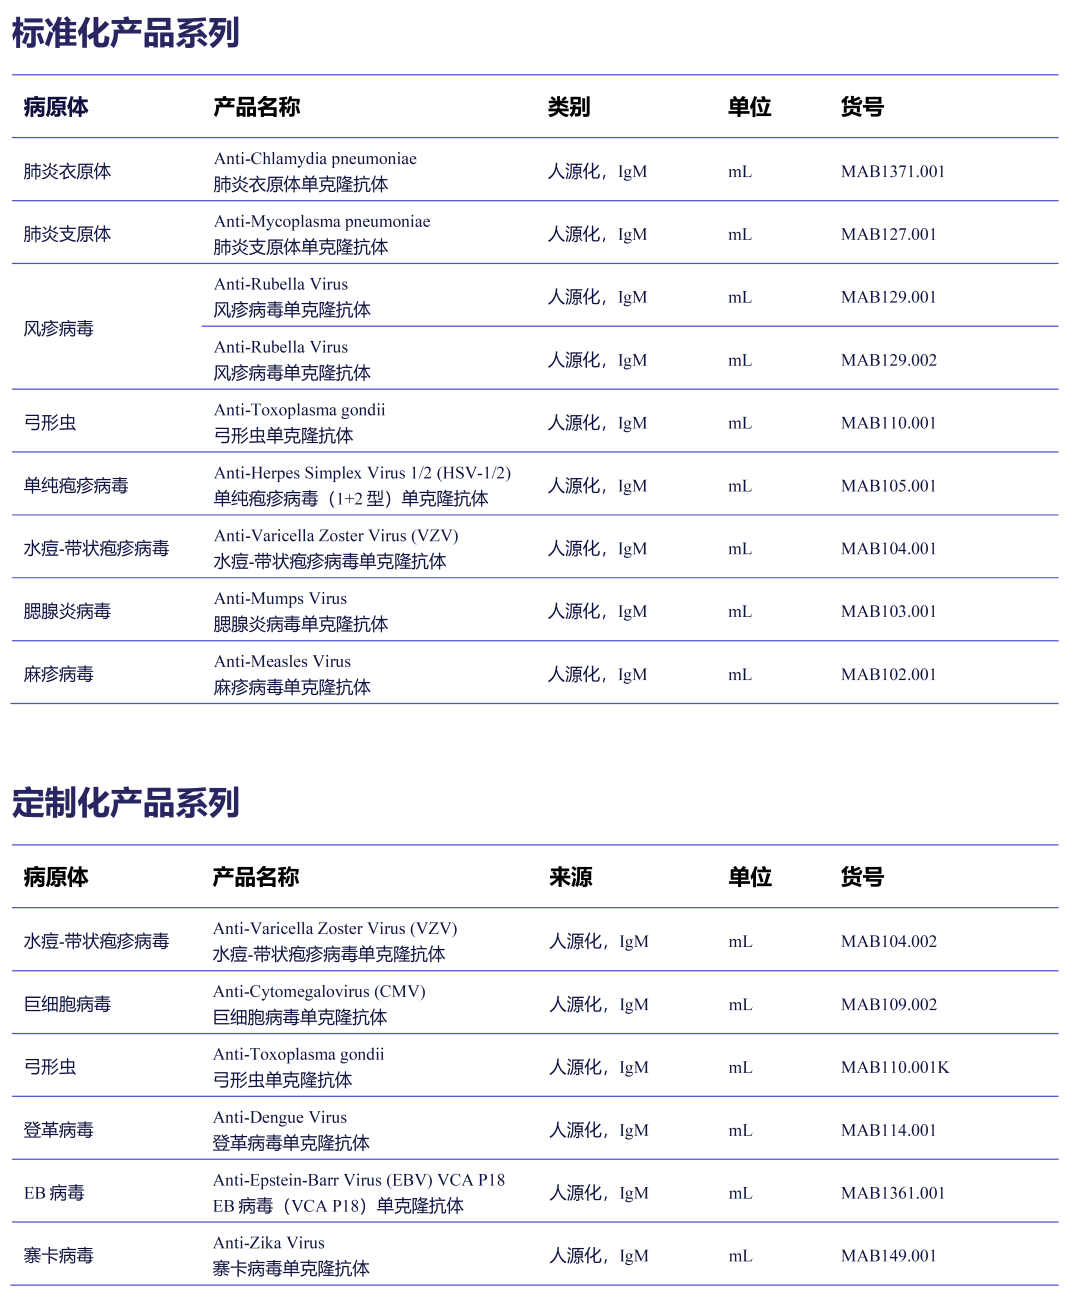 广东 404家IVD生产企业名录